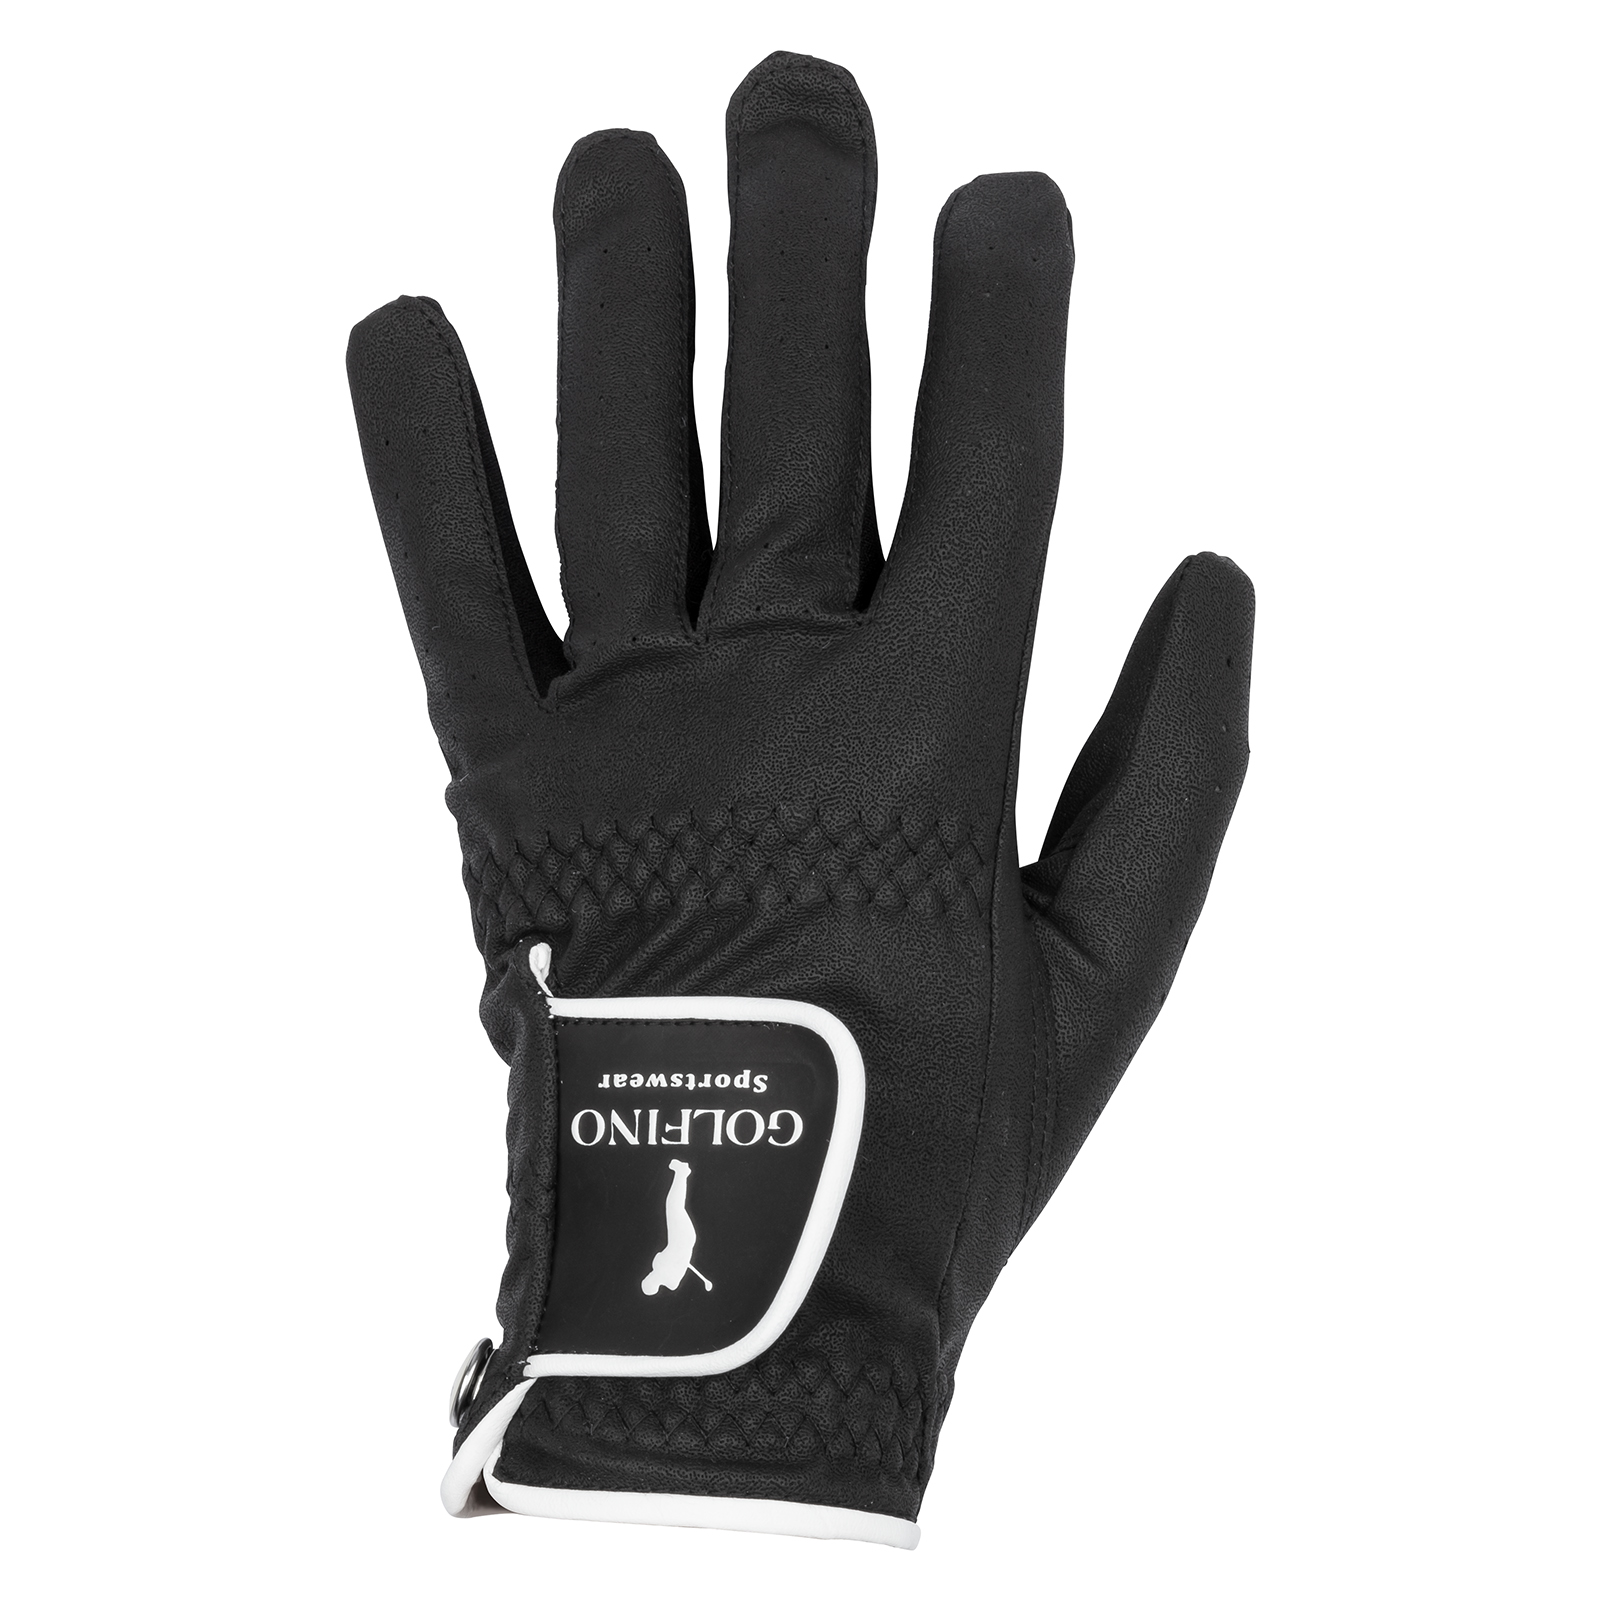 Ladies' non-slip golf gloves